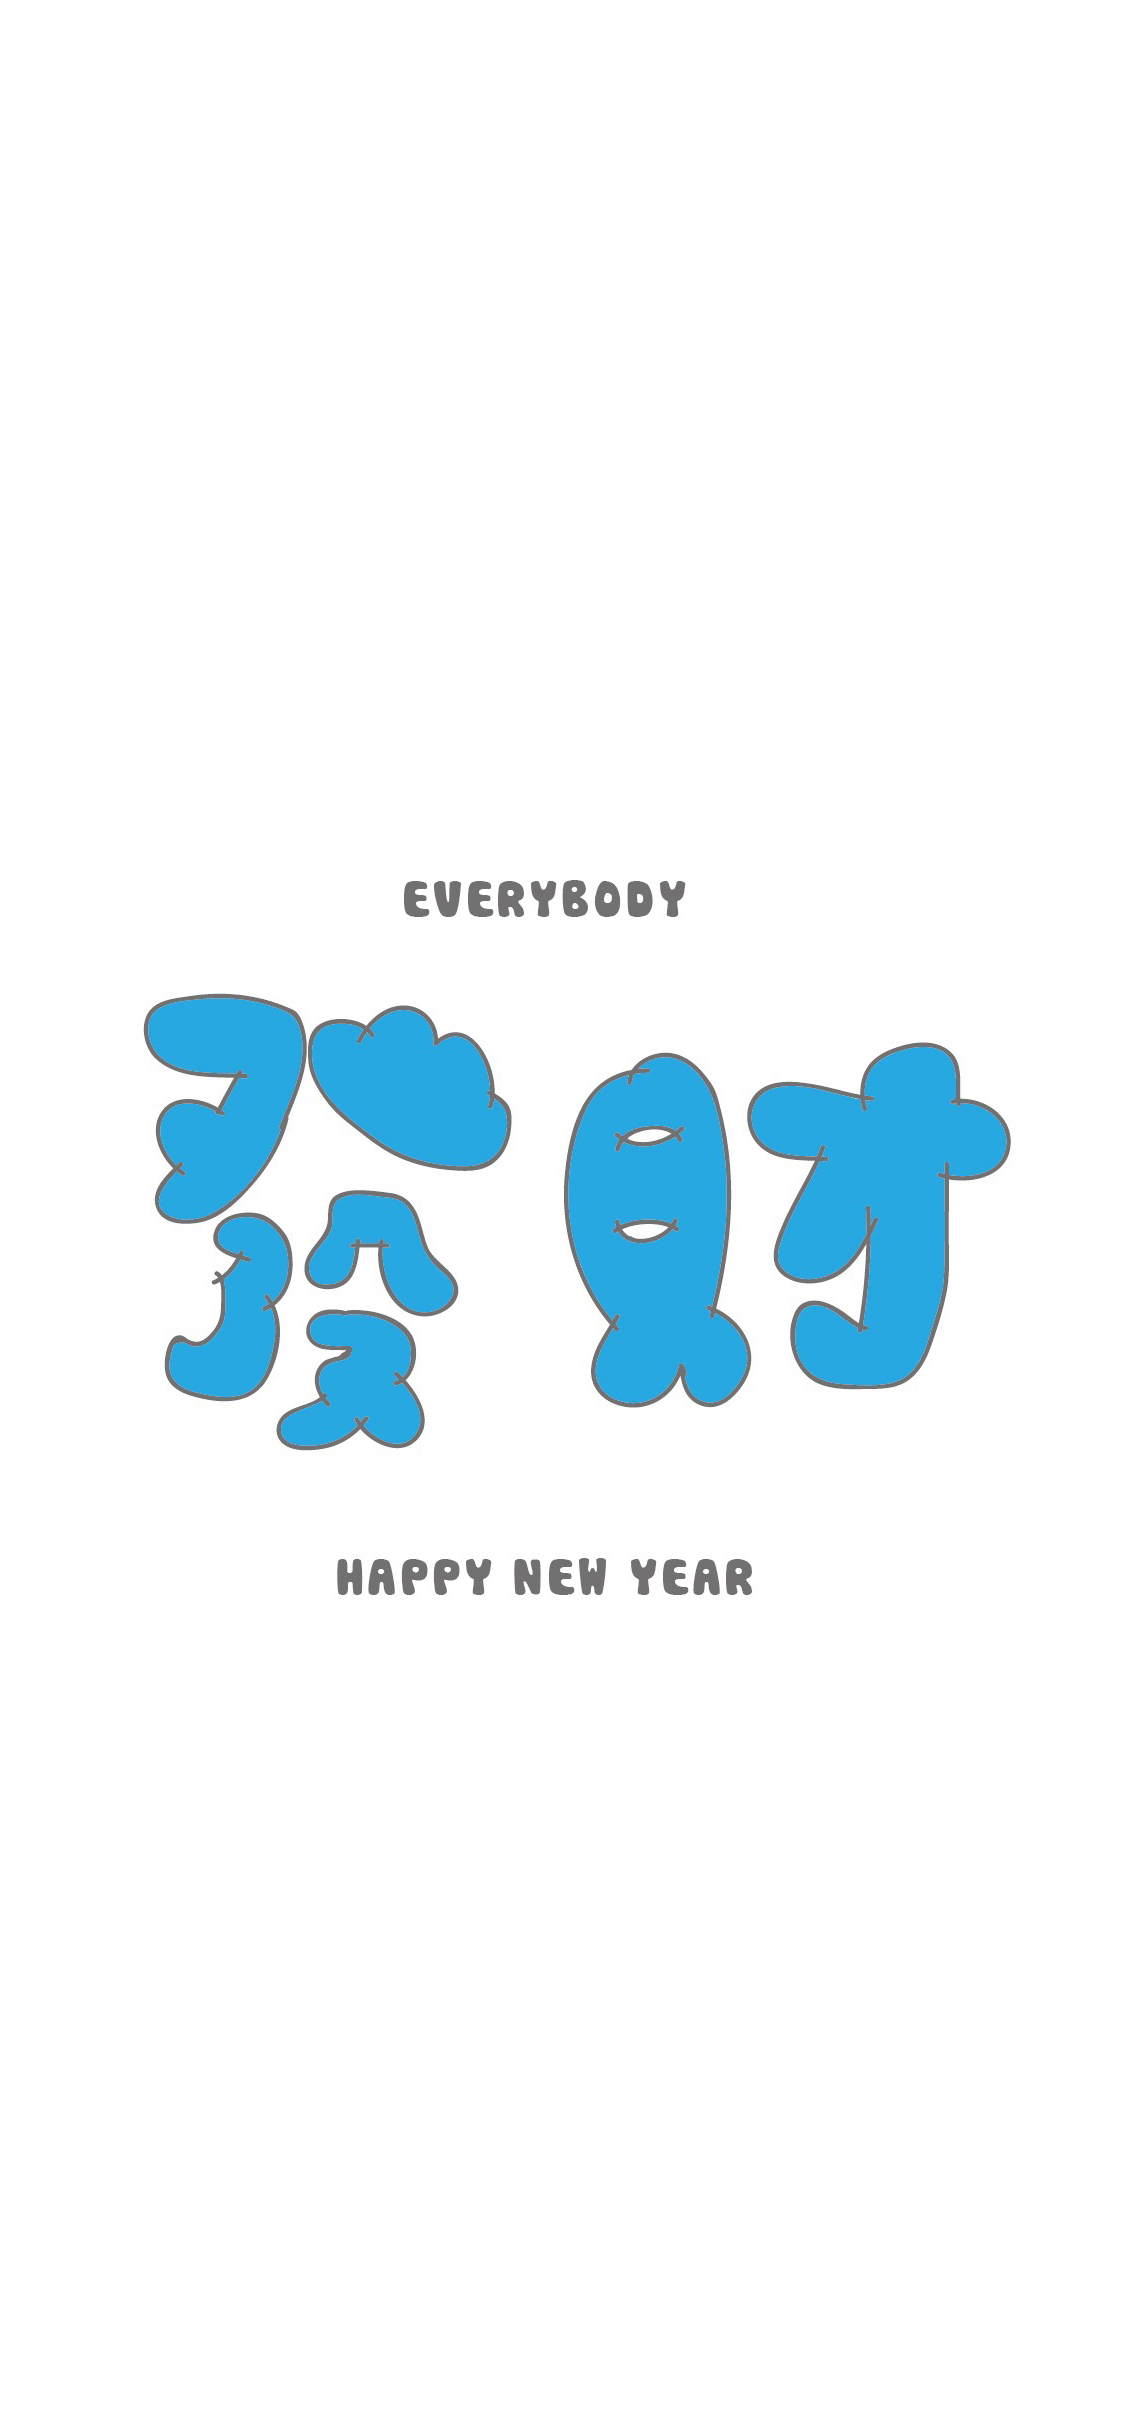 发财 蓝色 繁体字 新年快乐 苹果手机高清壁纸 1125x